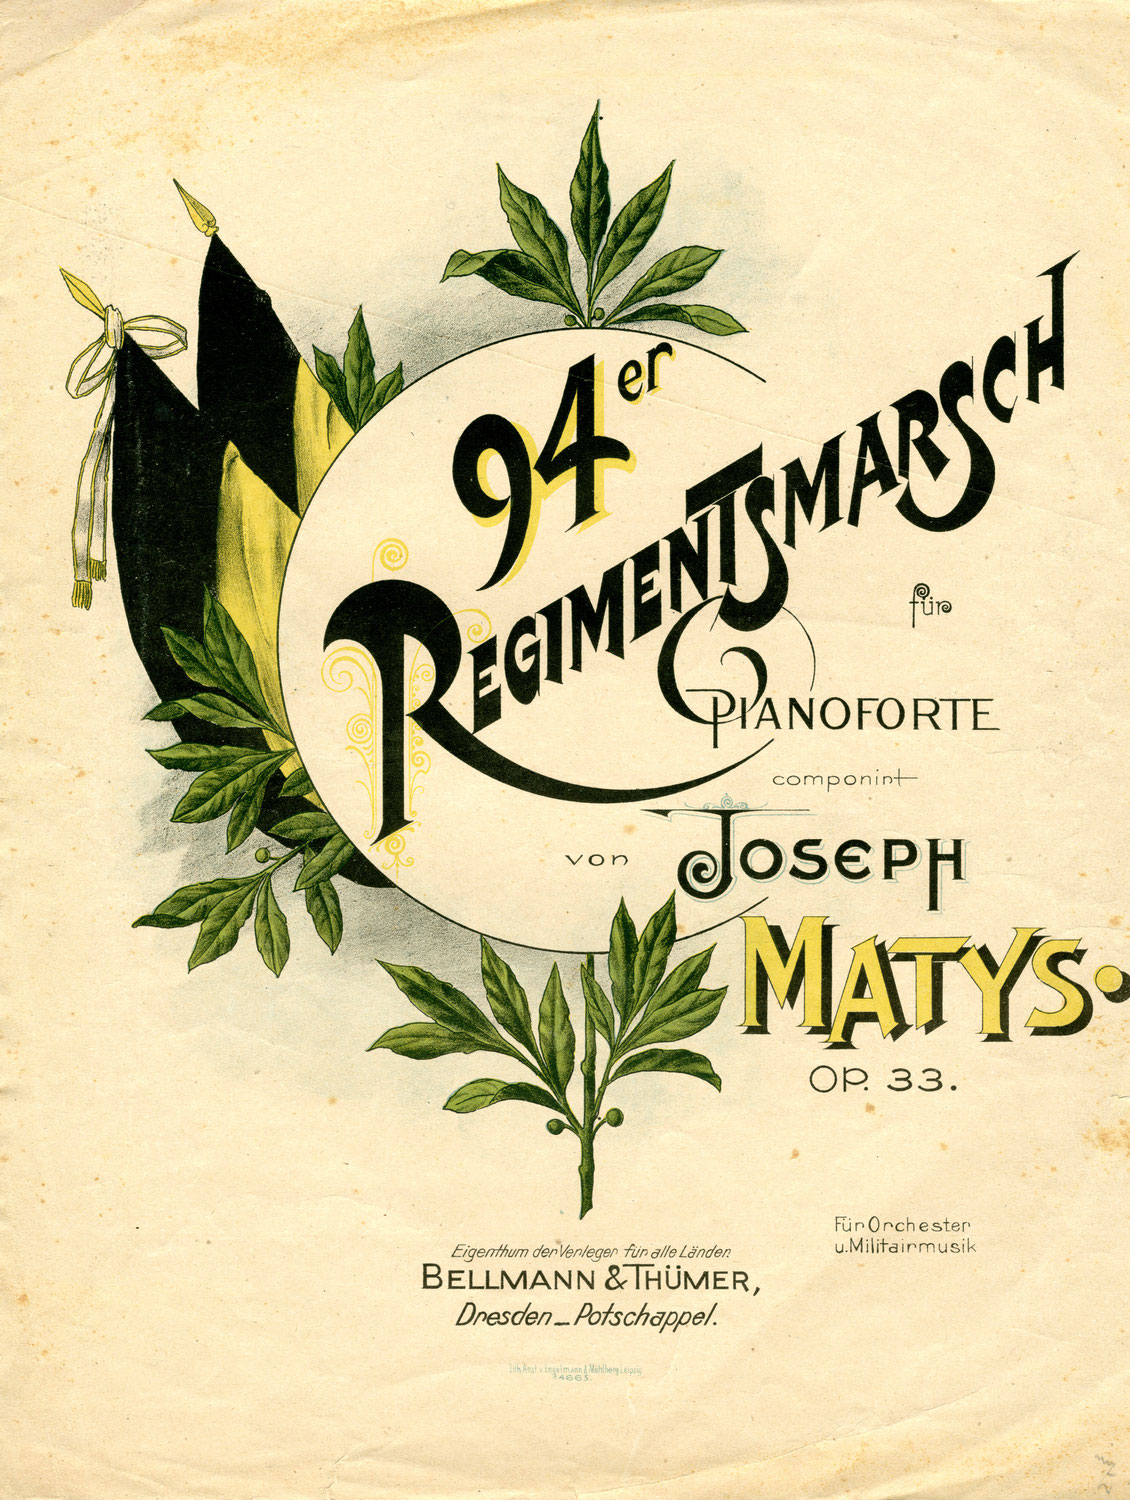 Joseph Matys, Komponist des "94er Regimentsmarsches"